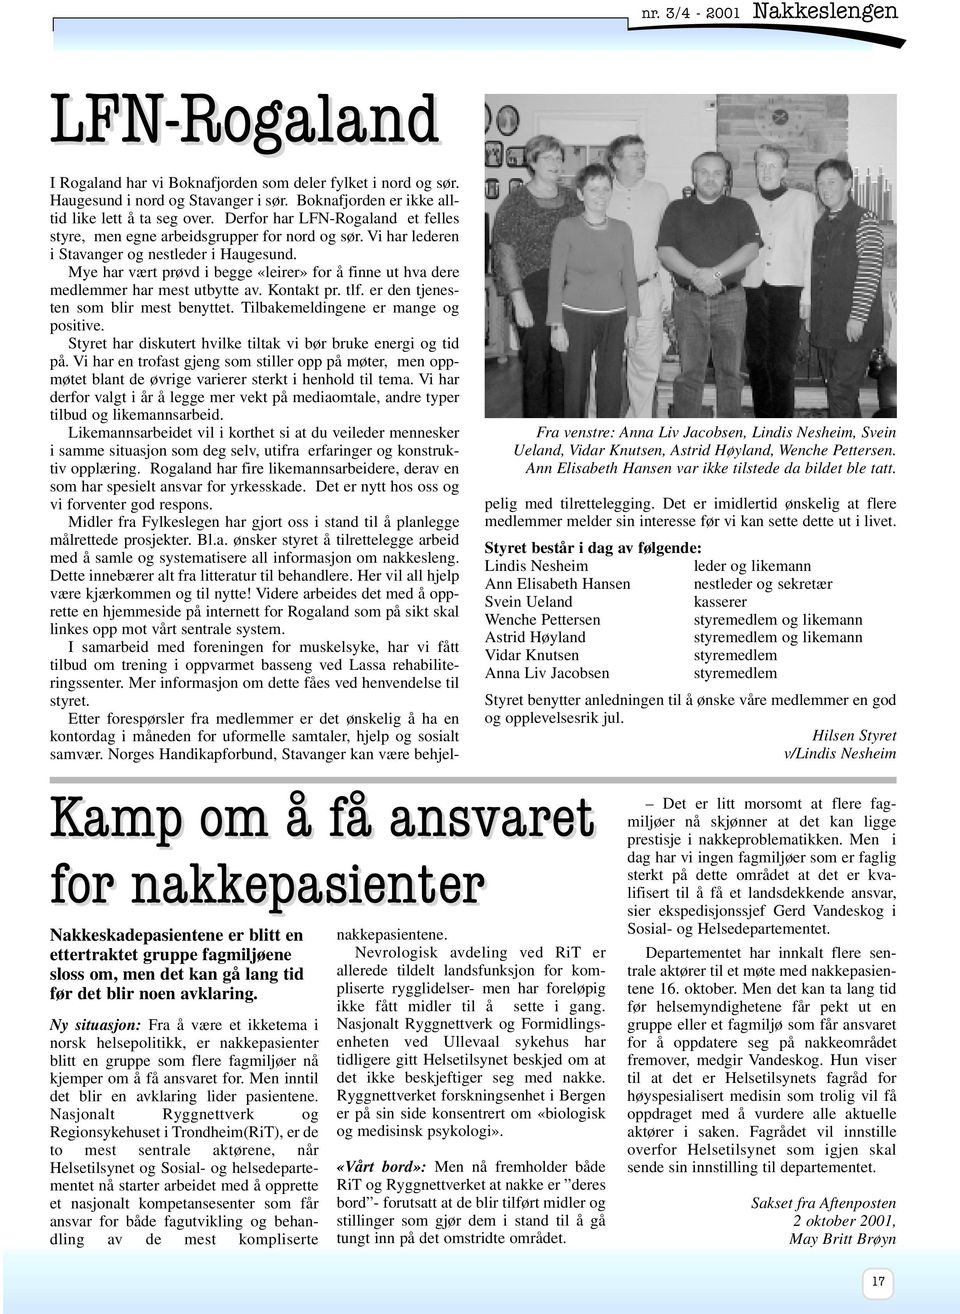 Boknafjorden er ikke alltid like lett å ta seg over. Derfor har LFN-Rogaland et felles styre, men egne arbeidsgrupper for nord og sør. Vi har lederen i Stavanger og nestleder i Haugesund.